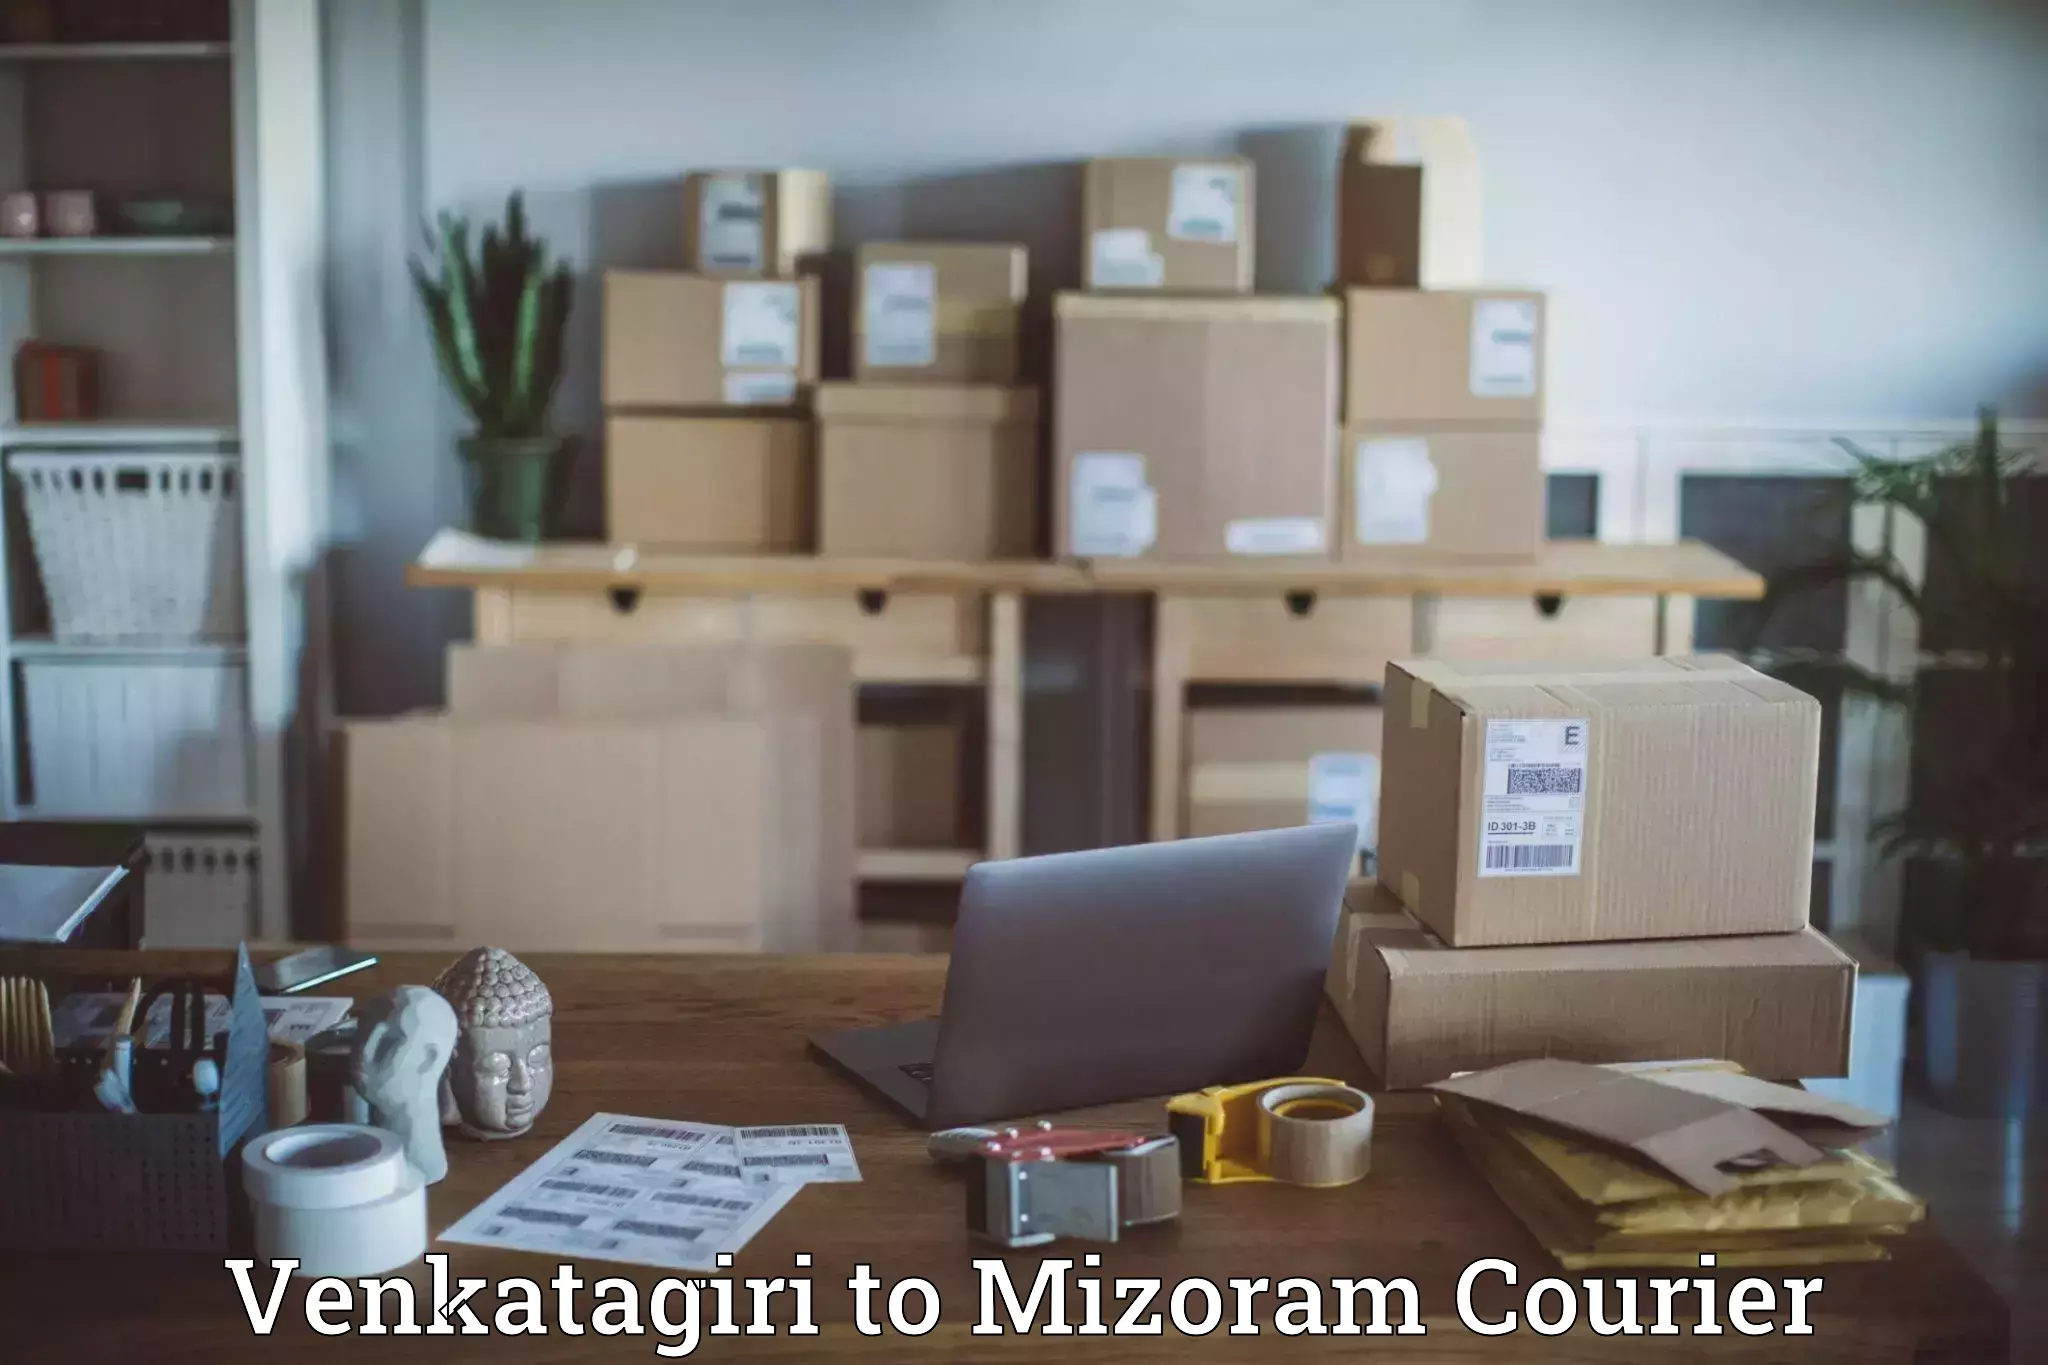 Same-day delivery solutions Venkatagiri to Mizoram